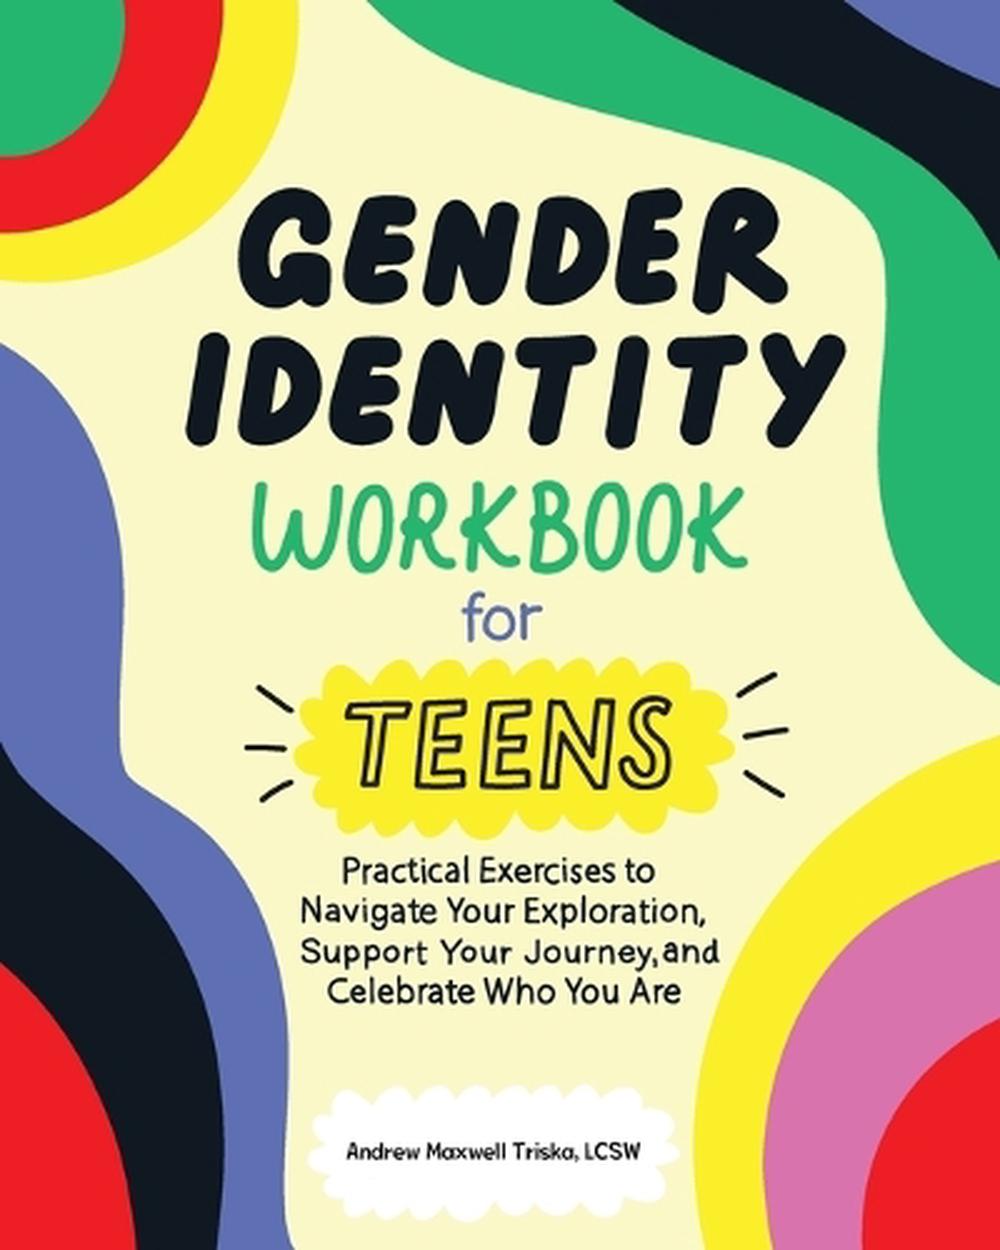 my new gender workbook